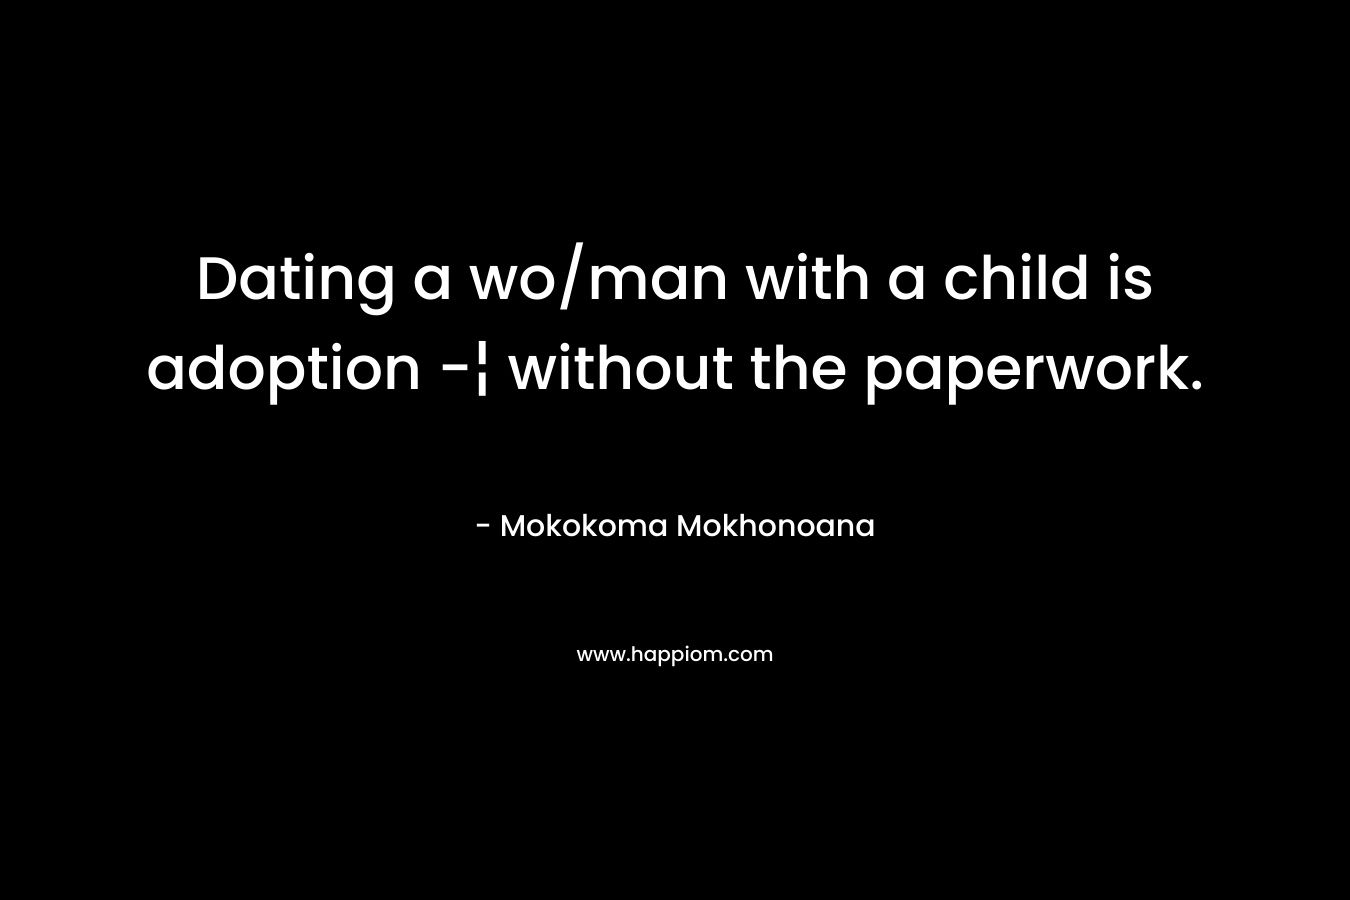 Dating a wo/man with a child is adoption -¦ without the paperwork. – Mokokoma Mokhonoana